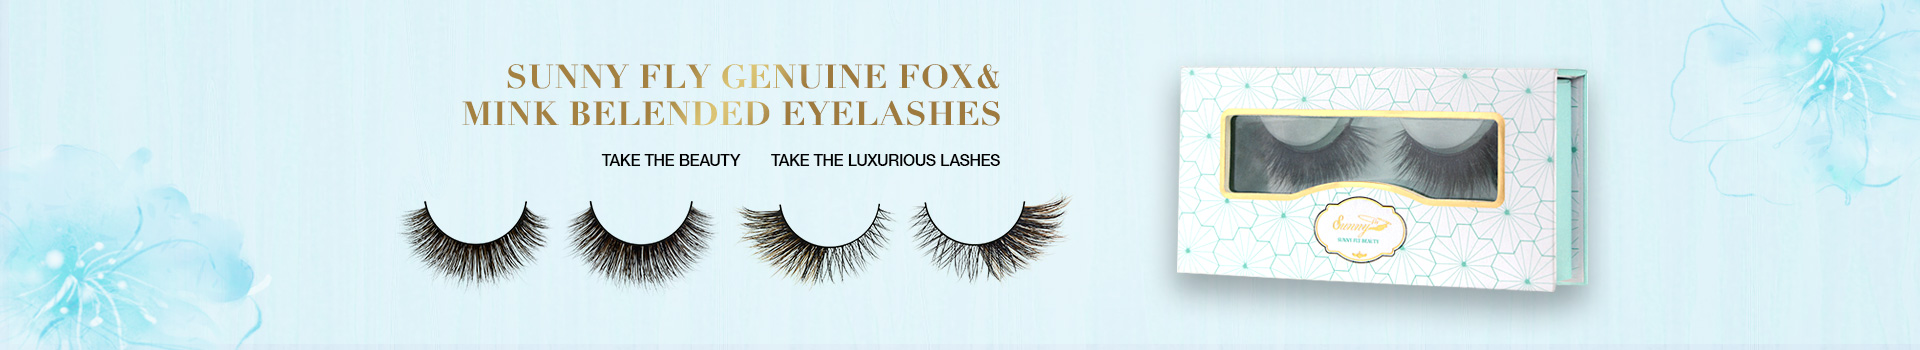 Fox & Mink Fur Blended Eyelashes FMB19